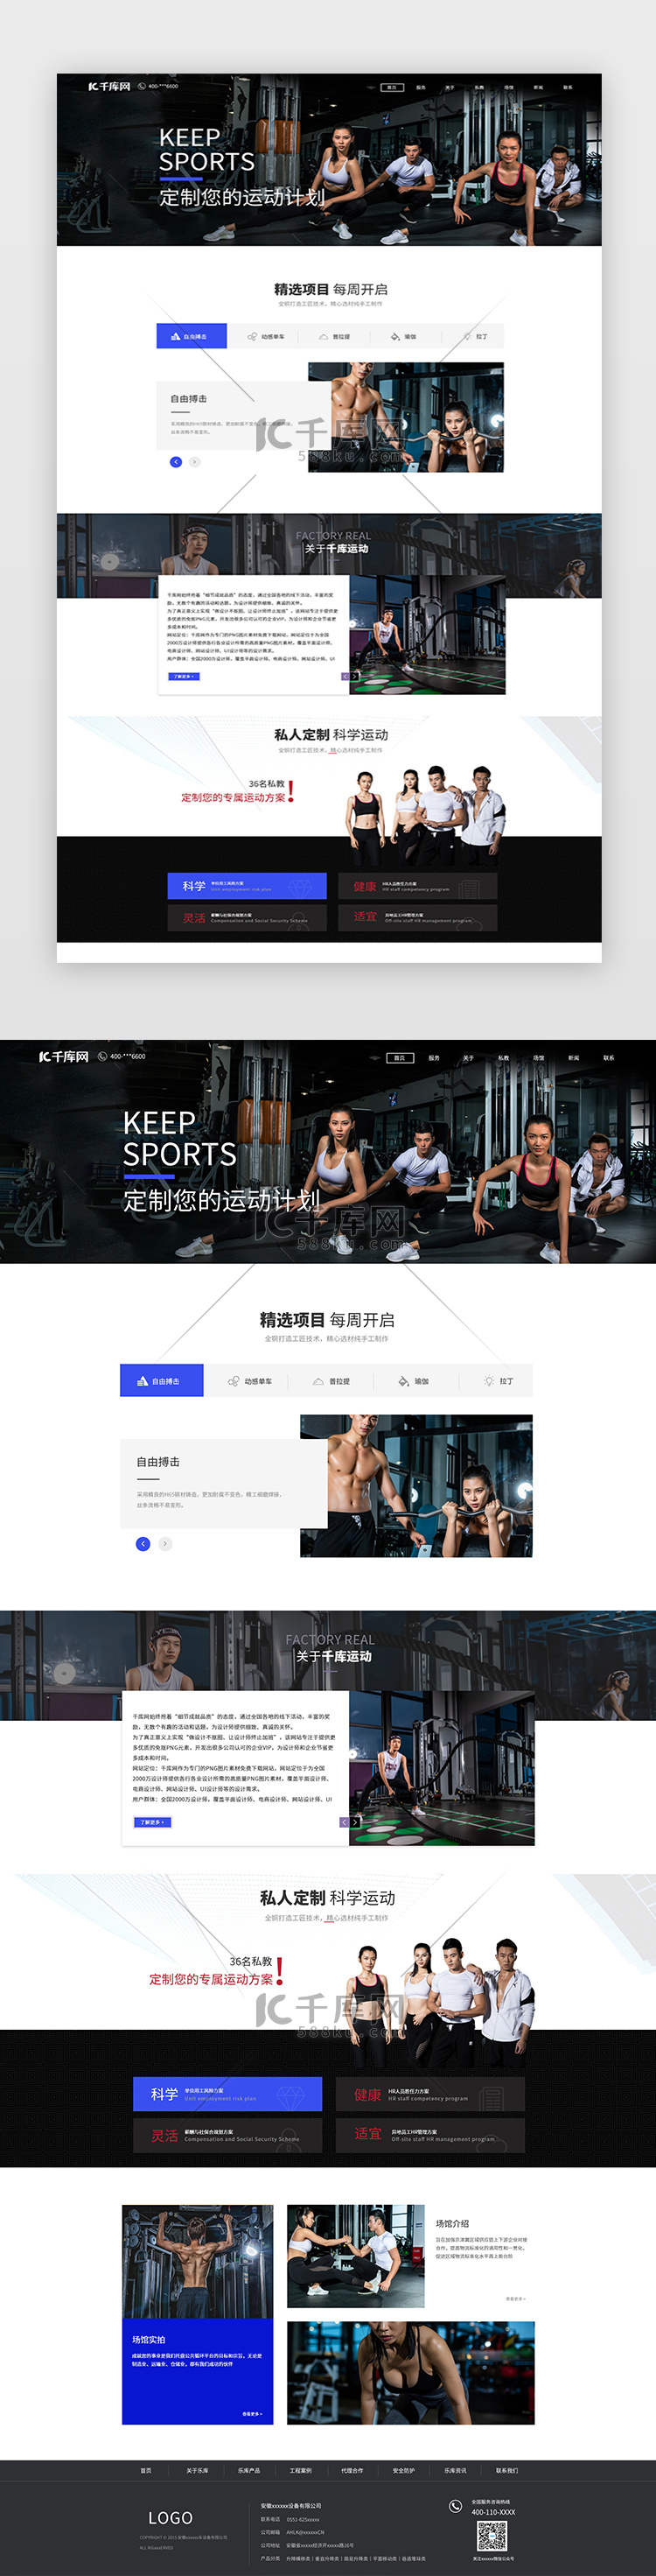 大气炫酷运动风格健身体育网站首页